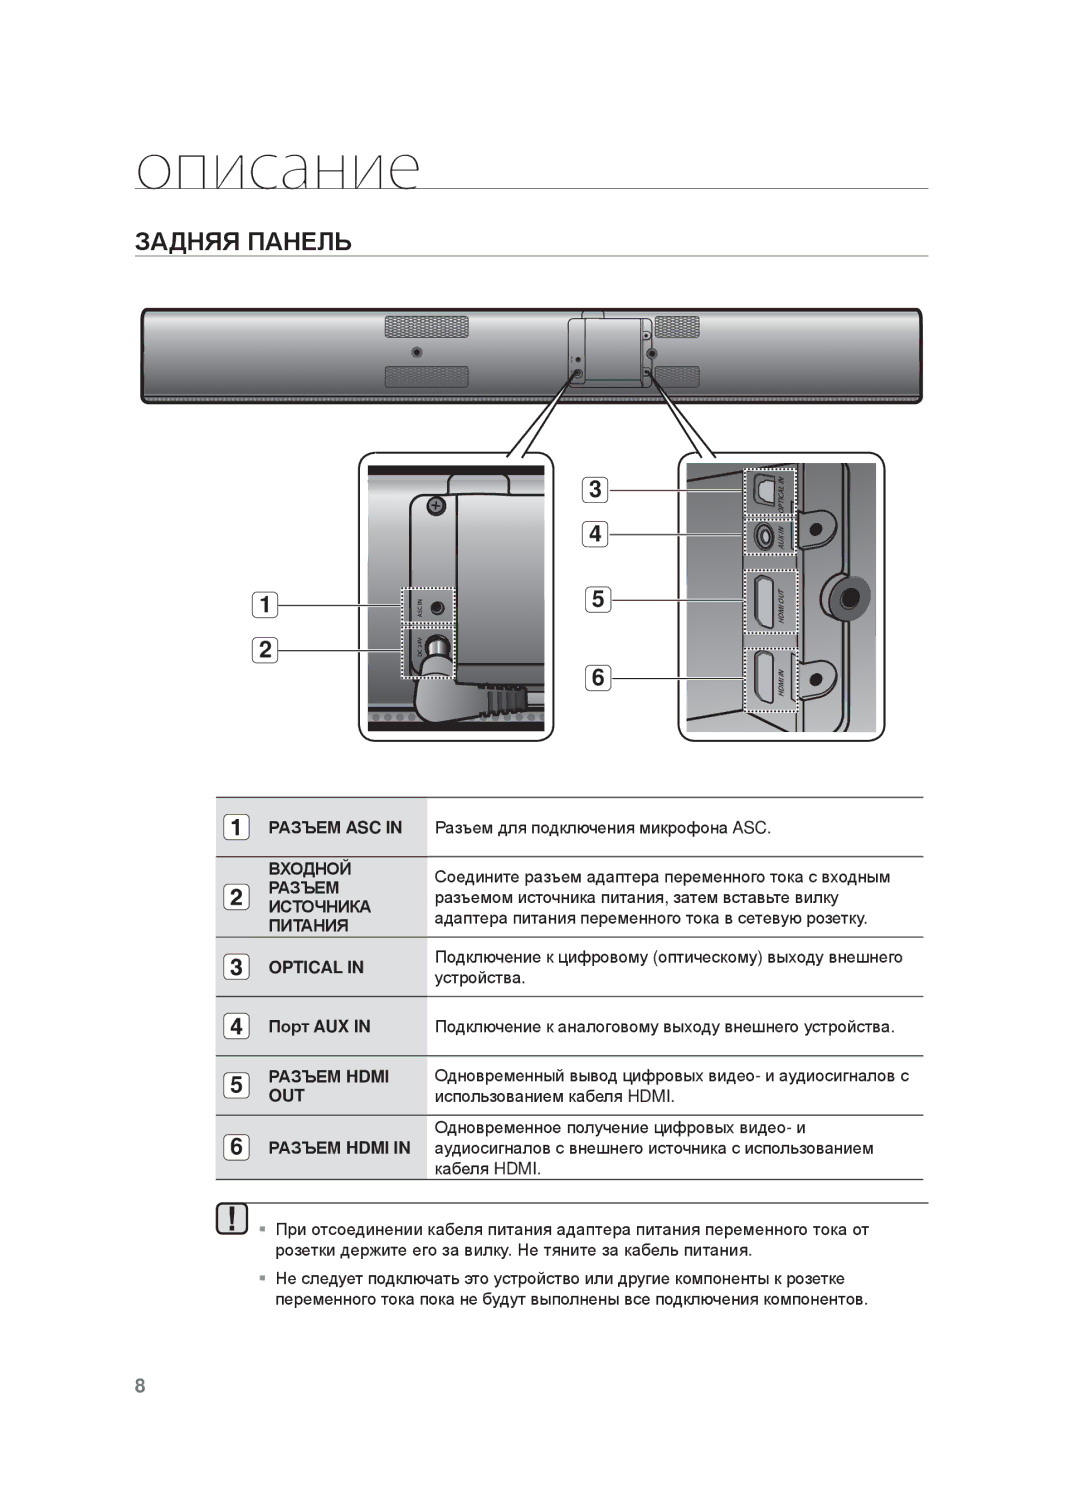 Samsung HW-F750/RU manual ЗȺДɇЯЯ ПȺɇȿЛЬ, ɊȺЗЪȿɆ ASC in Ɋɚɡɴɟɦ ɞɥɹ ɩɨɞɤɥɸɱɟɧɢɹ ɦɢɤɪɨɮɨɧɚ ASC, Optical, ɭɫɬɪɨɣɫɬɜɚ 